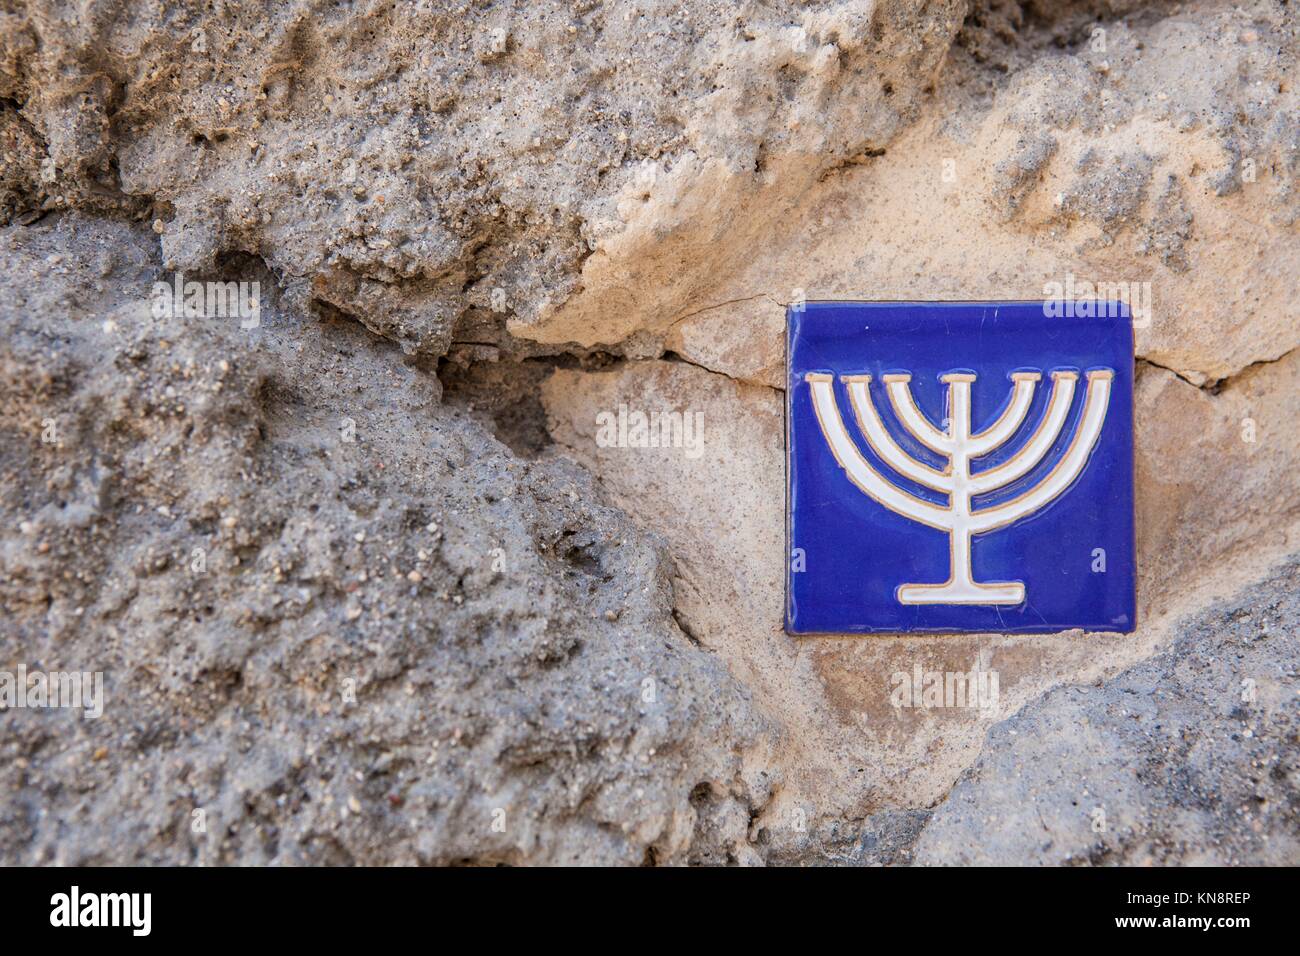 Carreaux émaillés sur mur de pierre avec symbole menorah marquant l'ancien quartier juif, Toledo, Espagne. Banque D'Images